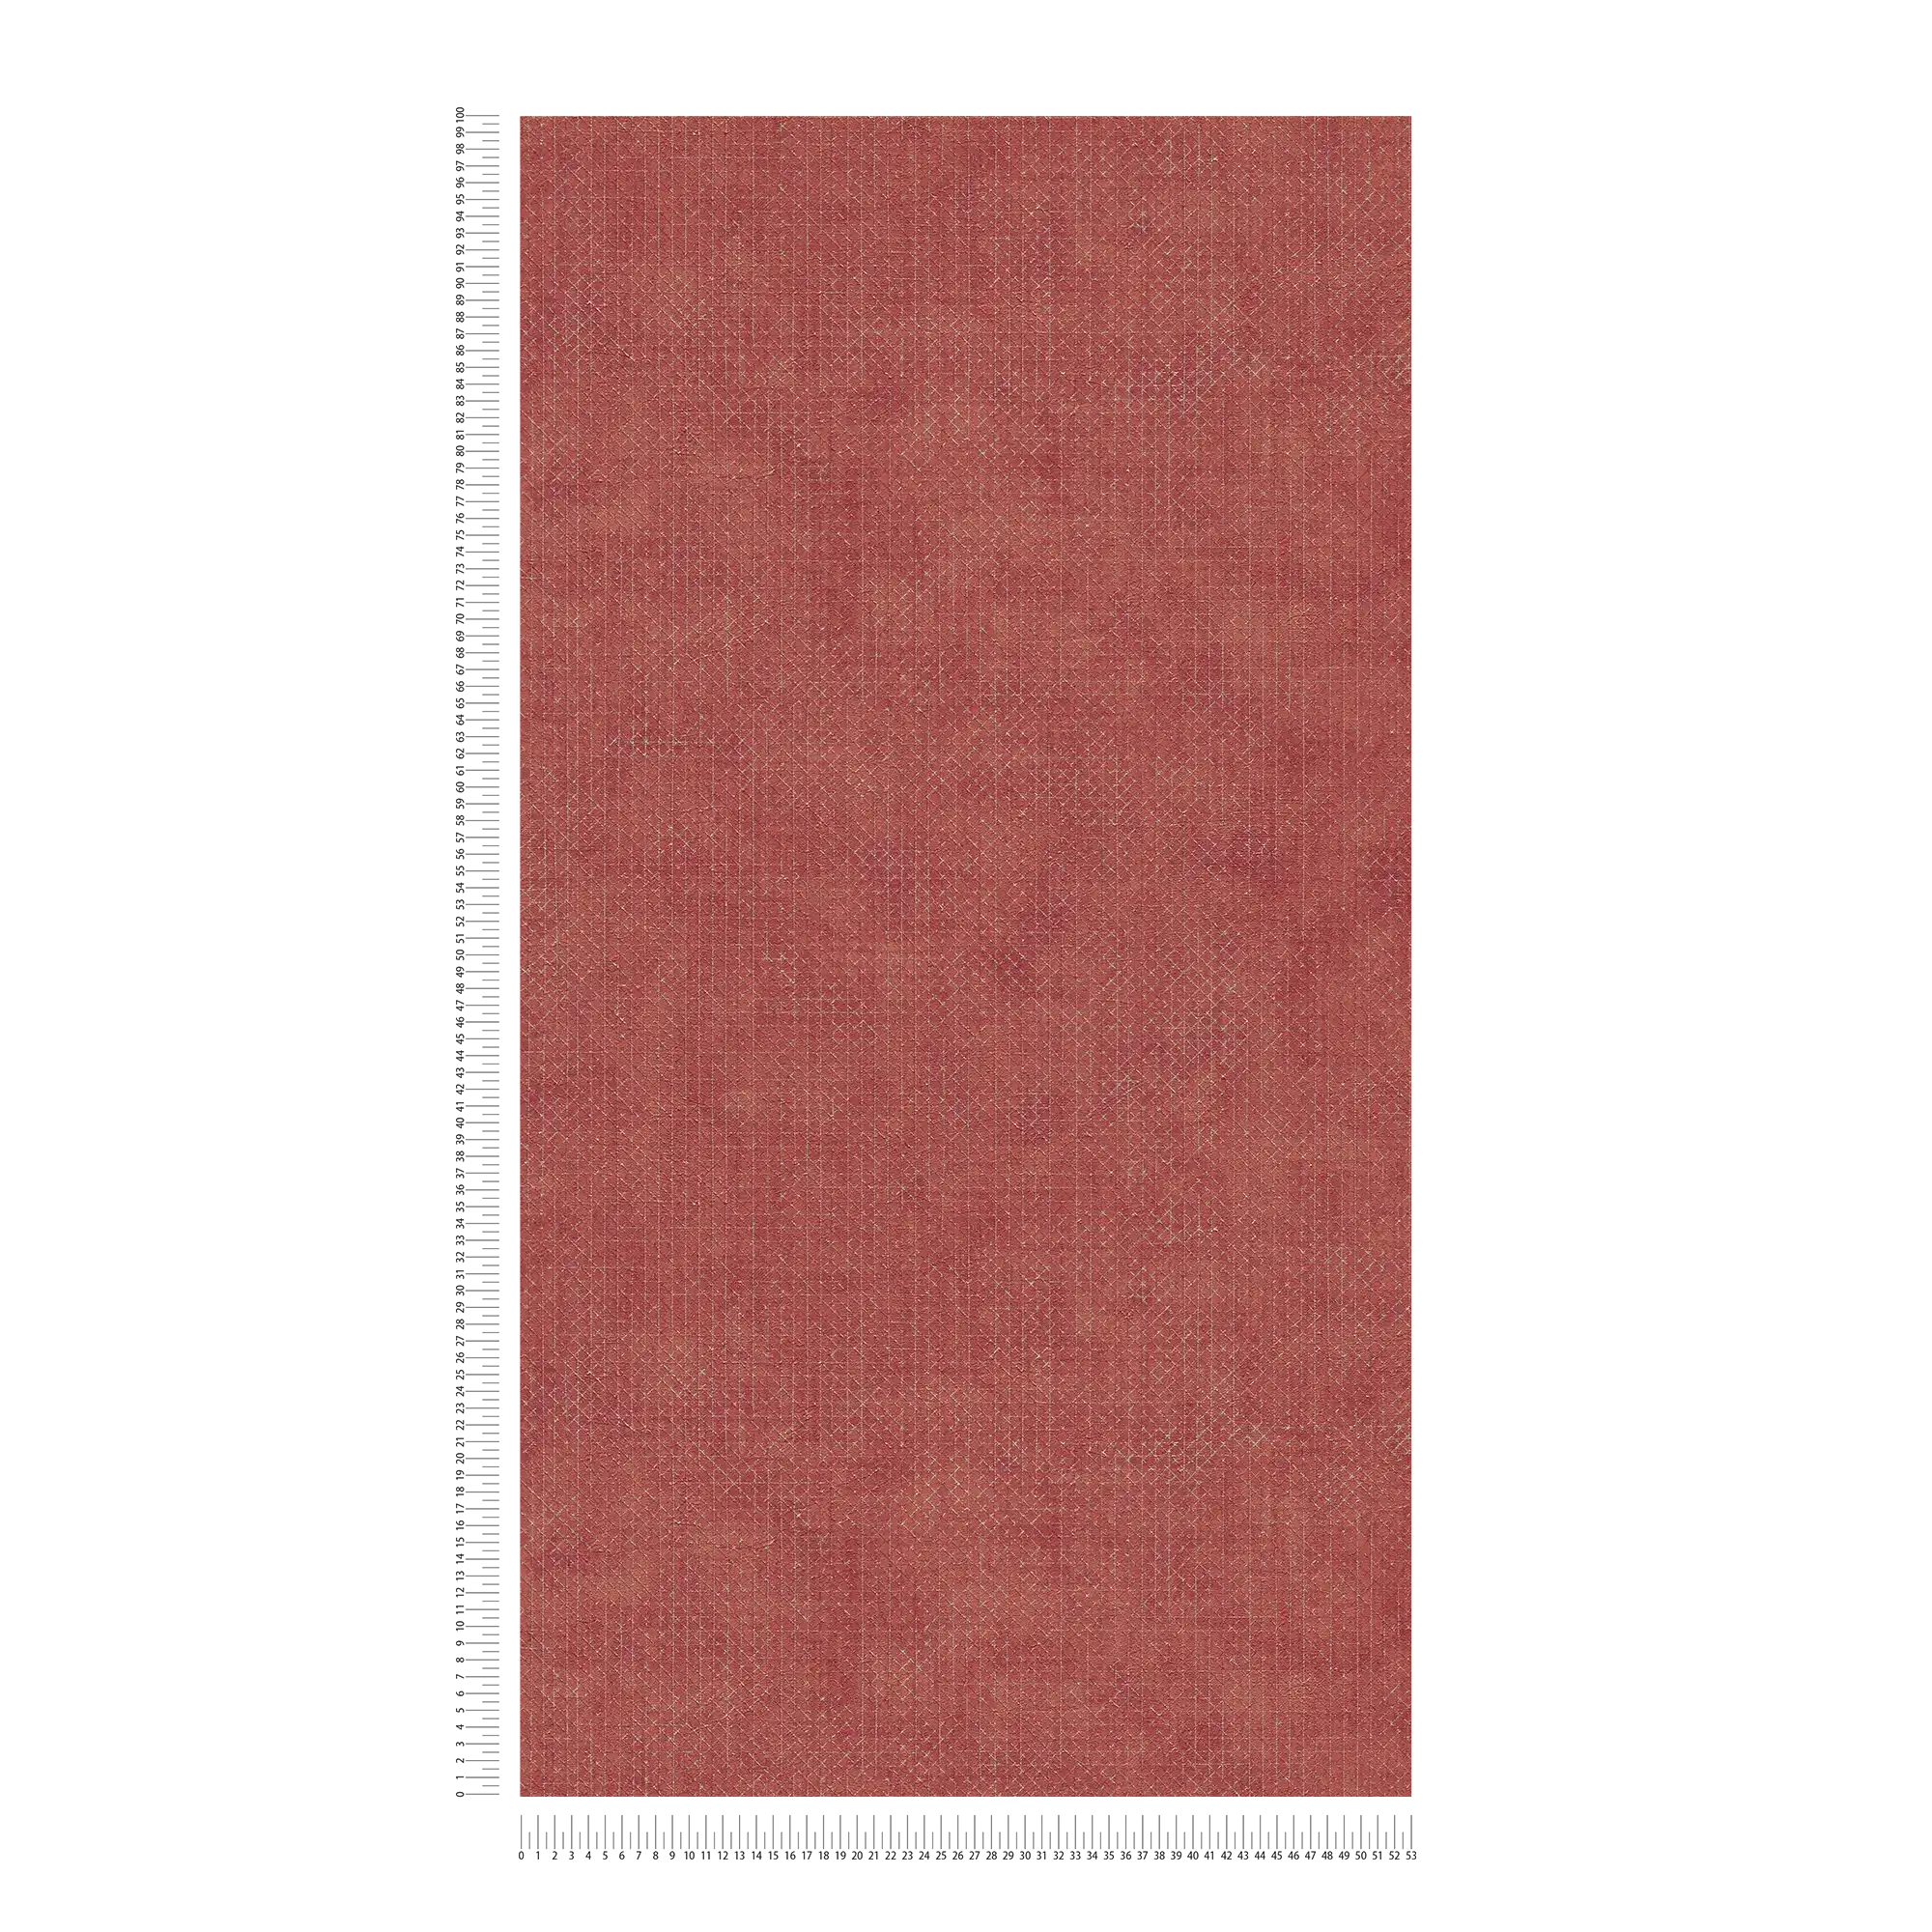             Papier peint rouge foncé avec motif de lignes argenté
        